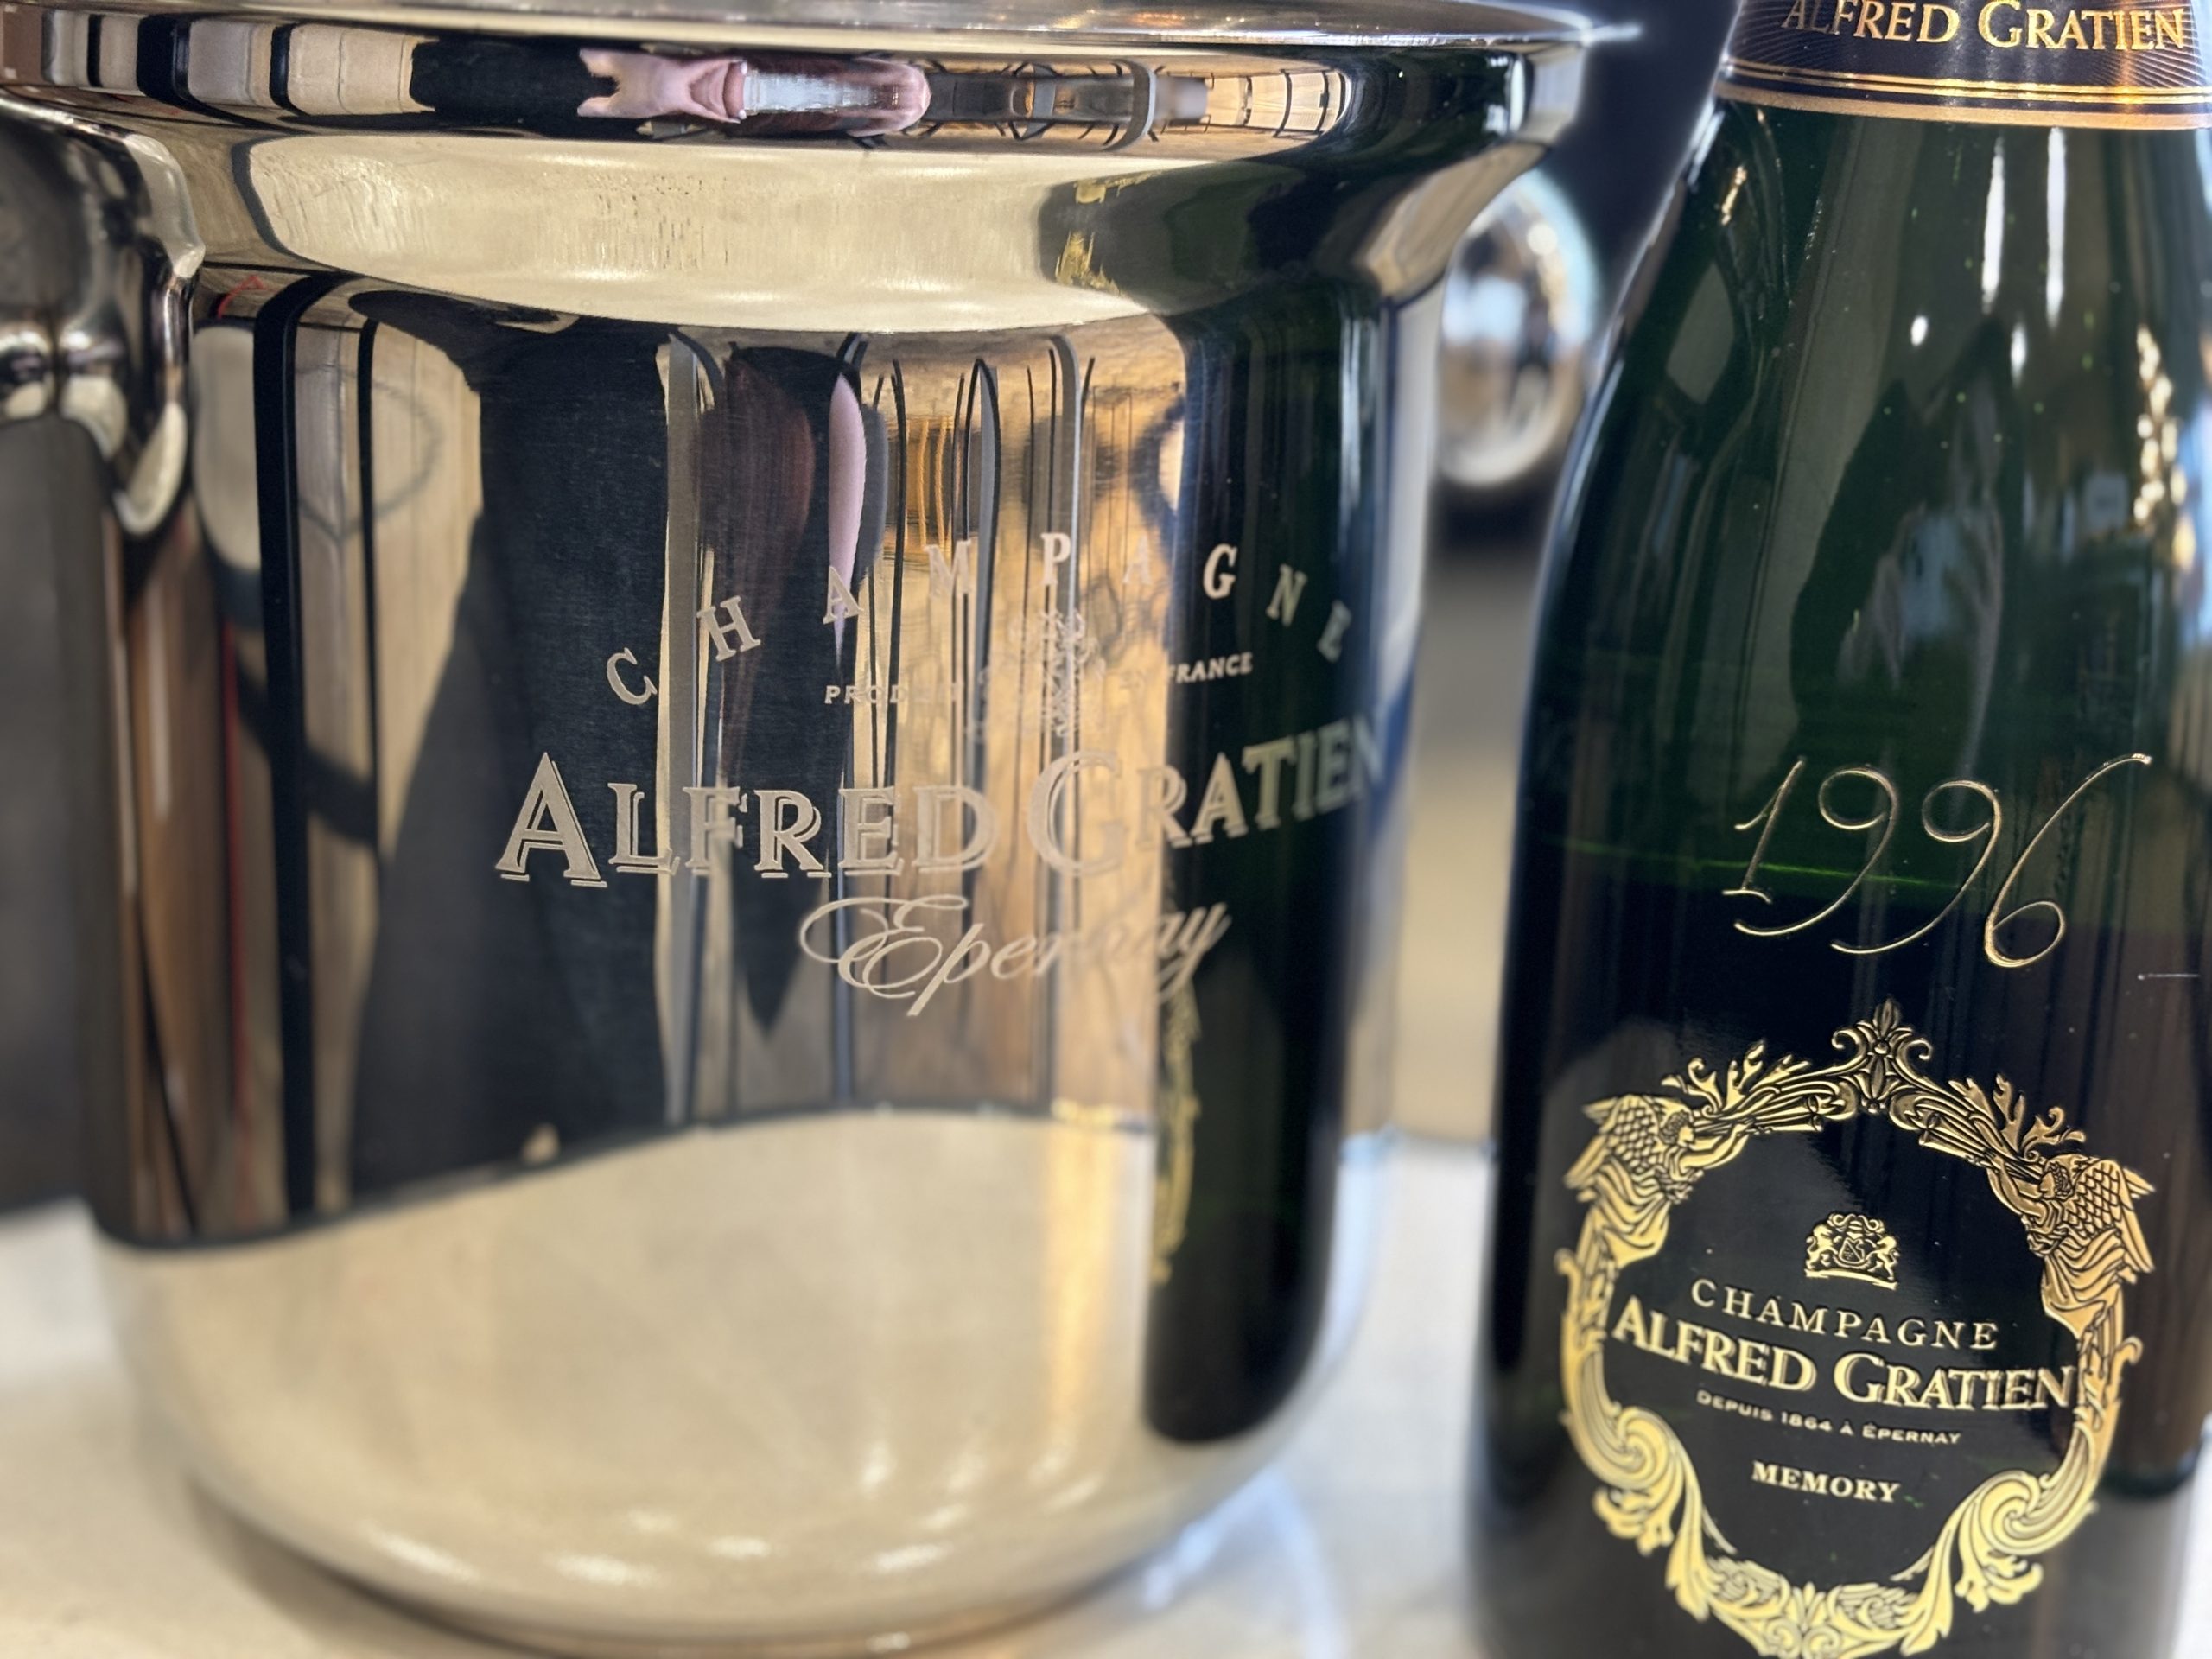 Egy palack Alfred Gratien Champagne MEMORY 1996 és egy Alfred Gratien pezsgős jégveder – 128.600.-Ft